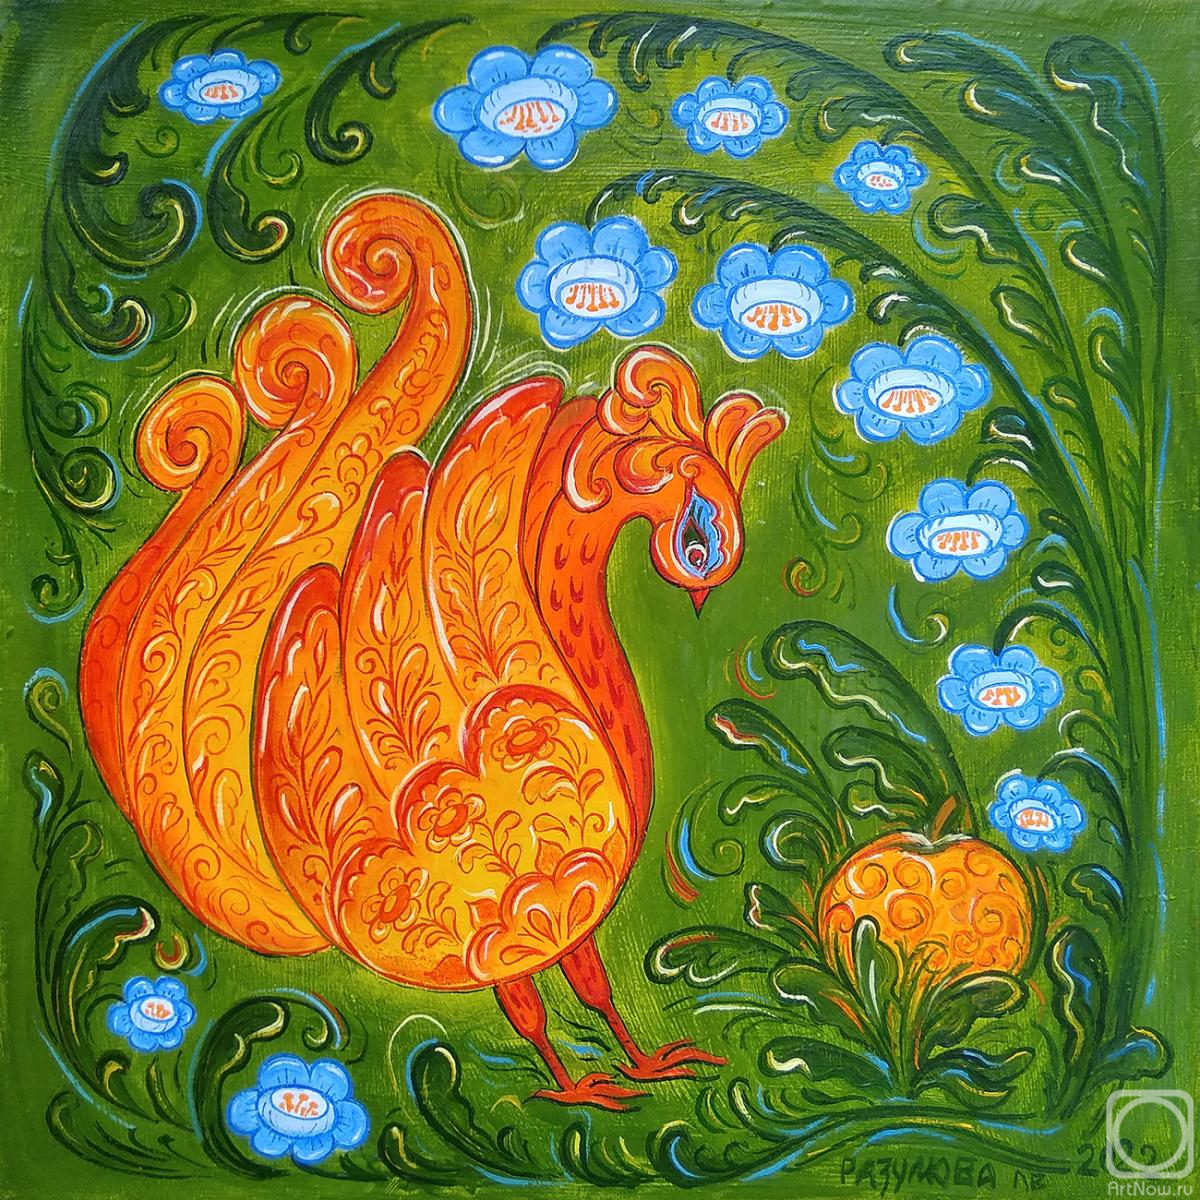 Razumova Lidia. The Firebird and the Golden Apple